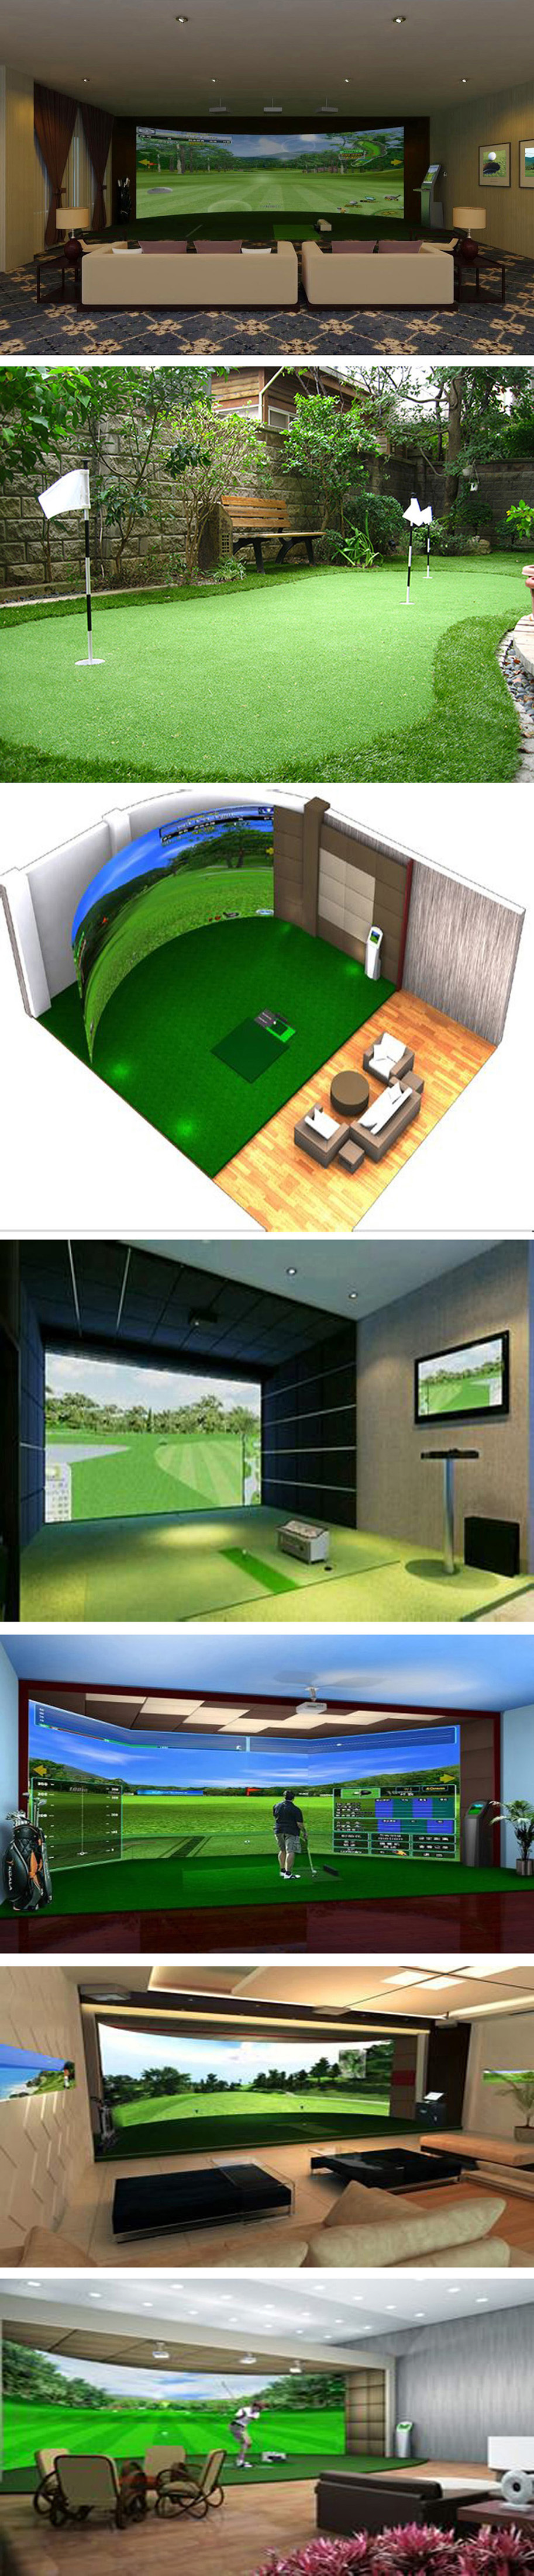 室内高尔夫球模拟器 04.jpg